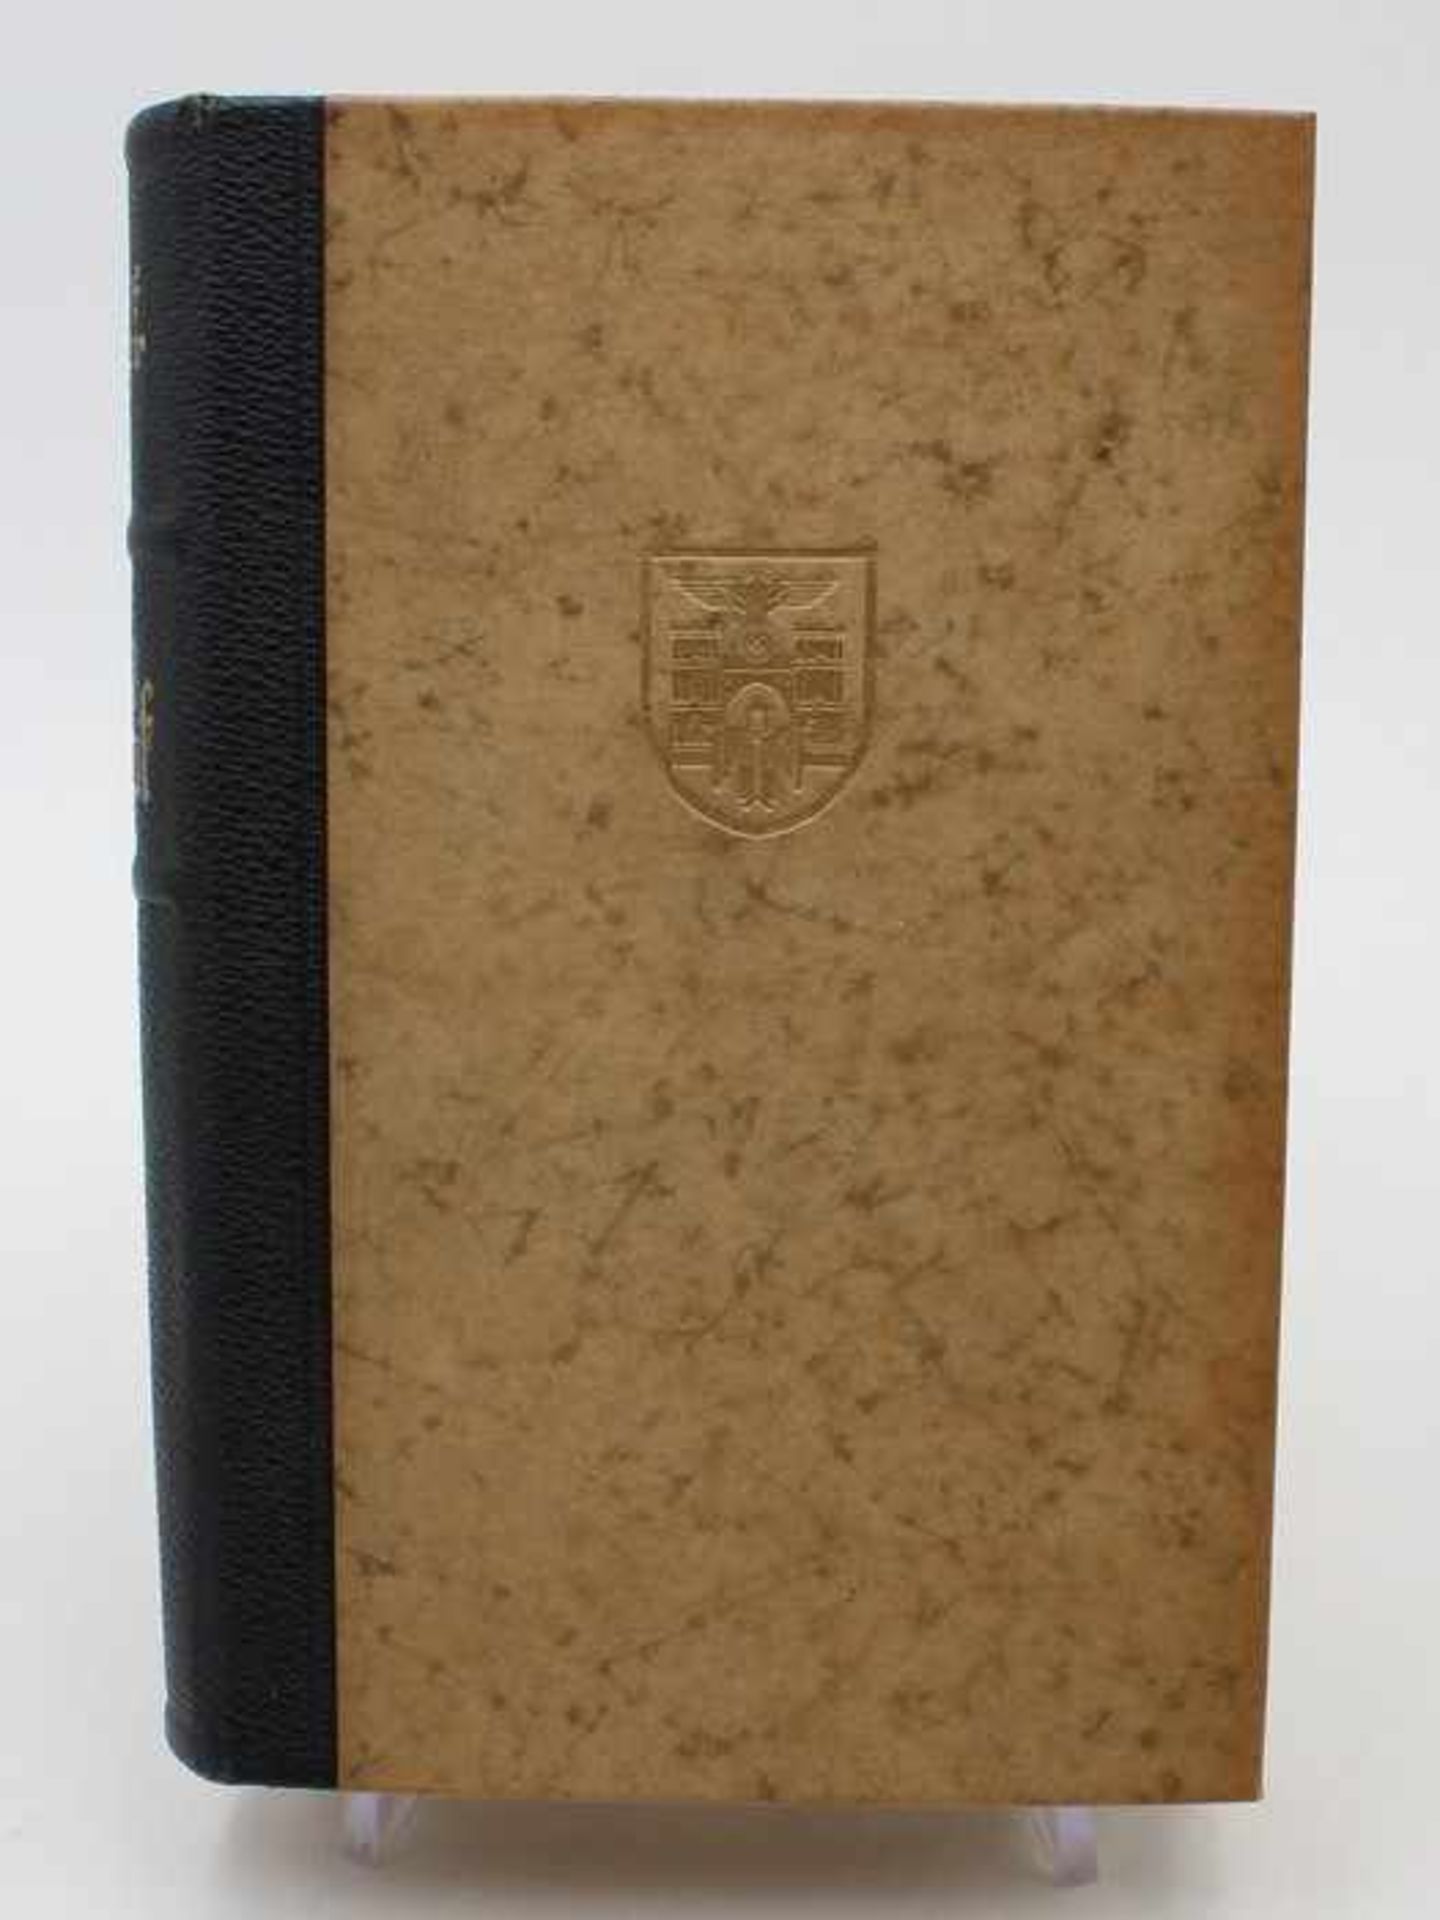 Buch - 3.ReichA.H., "Mein Kampf", 2 Bde. in einem Band, ungekürzte Ausgabe, 405.-409. Aufl., 1939